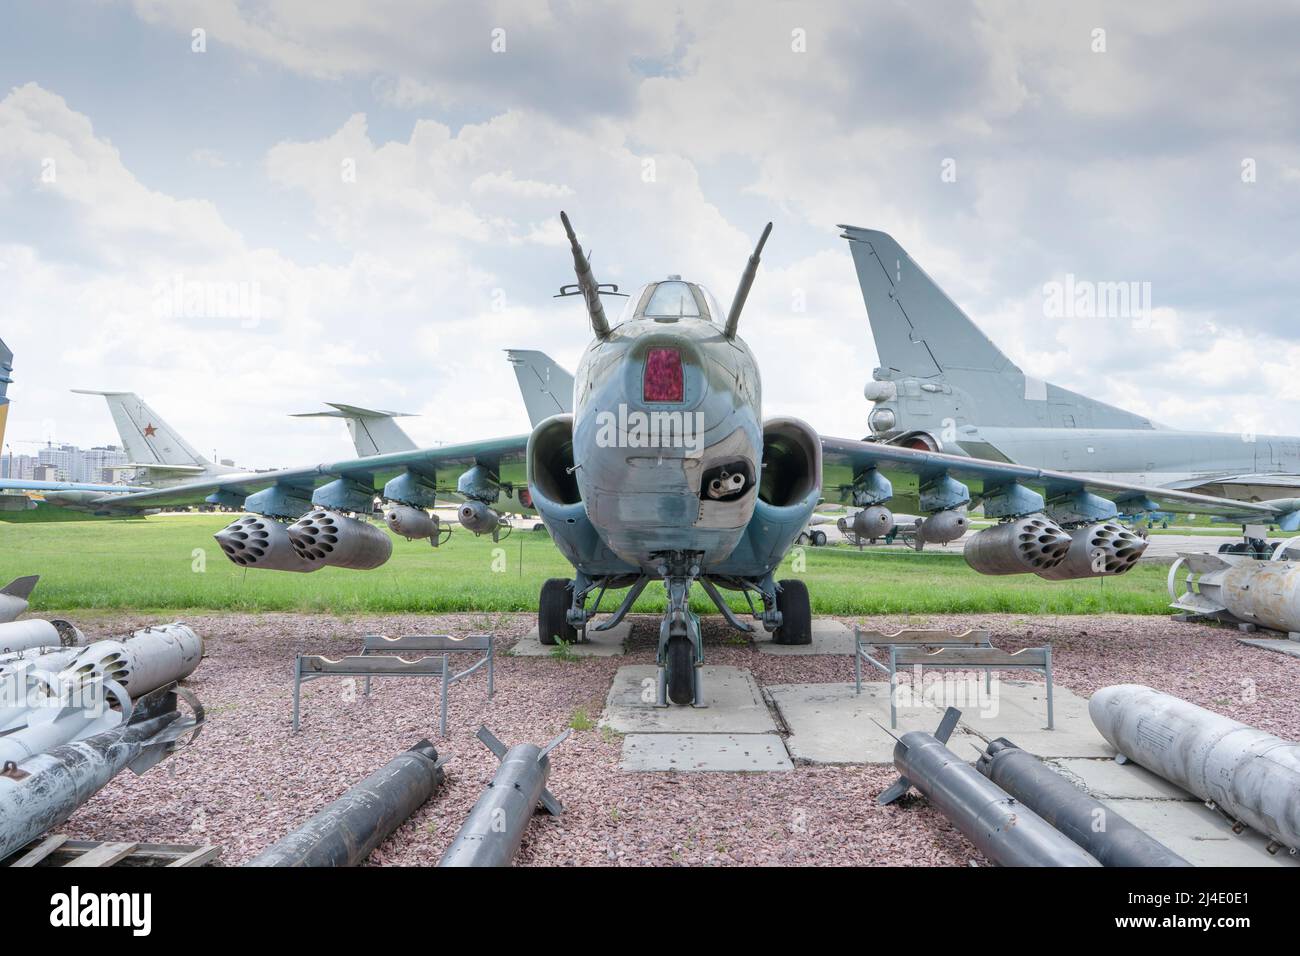 Bombardiere da caccia per aerei militari. Aeroplano con bombe e missili. Cabina in aereo. Zhuliany, Ucraina - 1 agosto 2021. Foto Stock